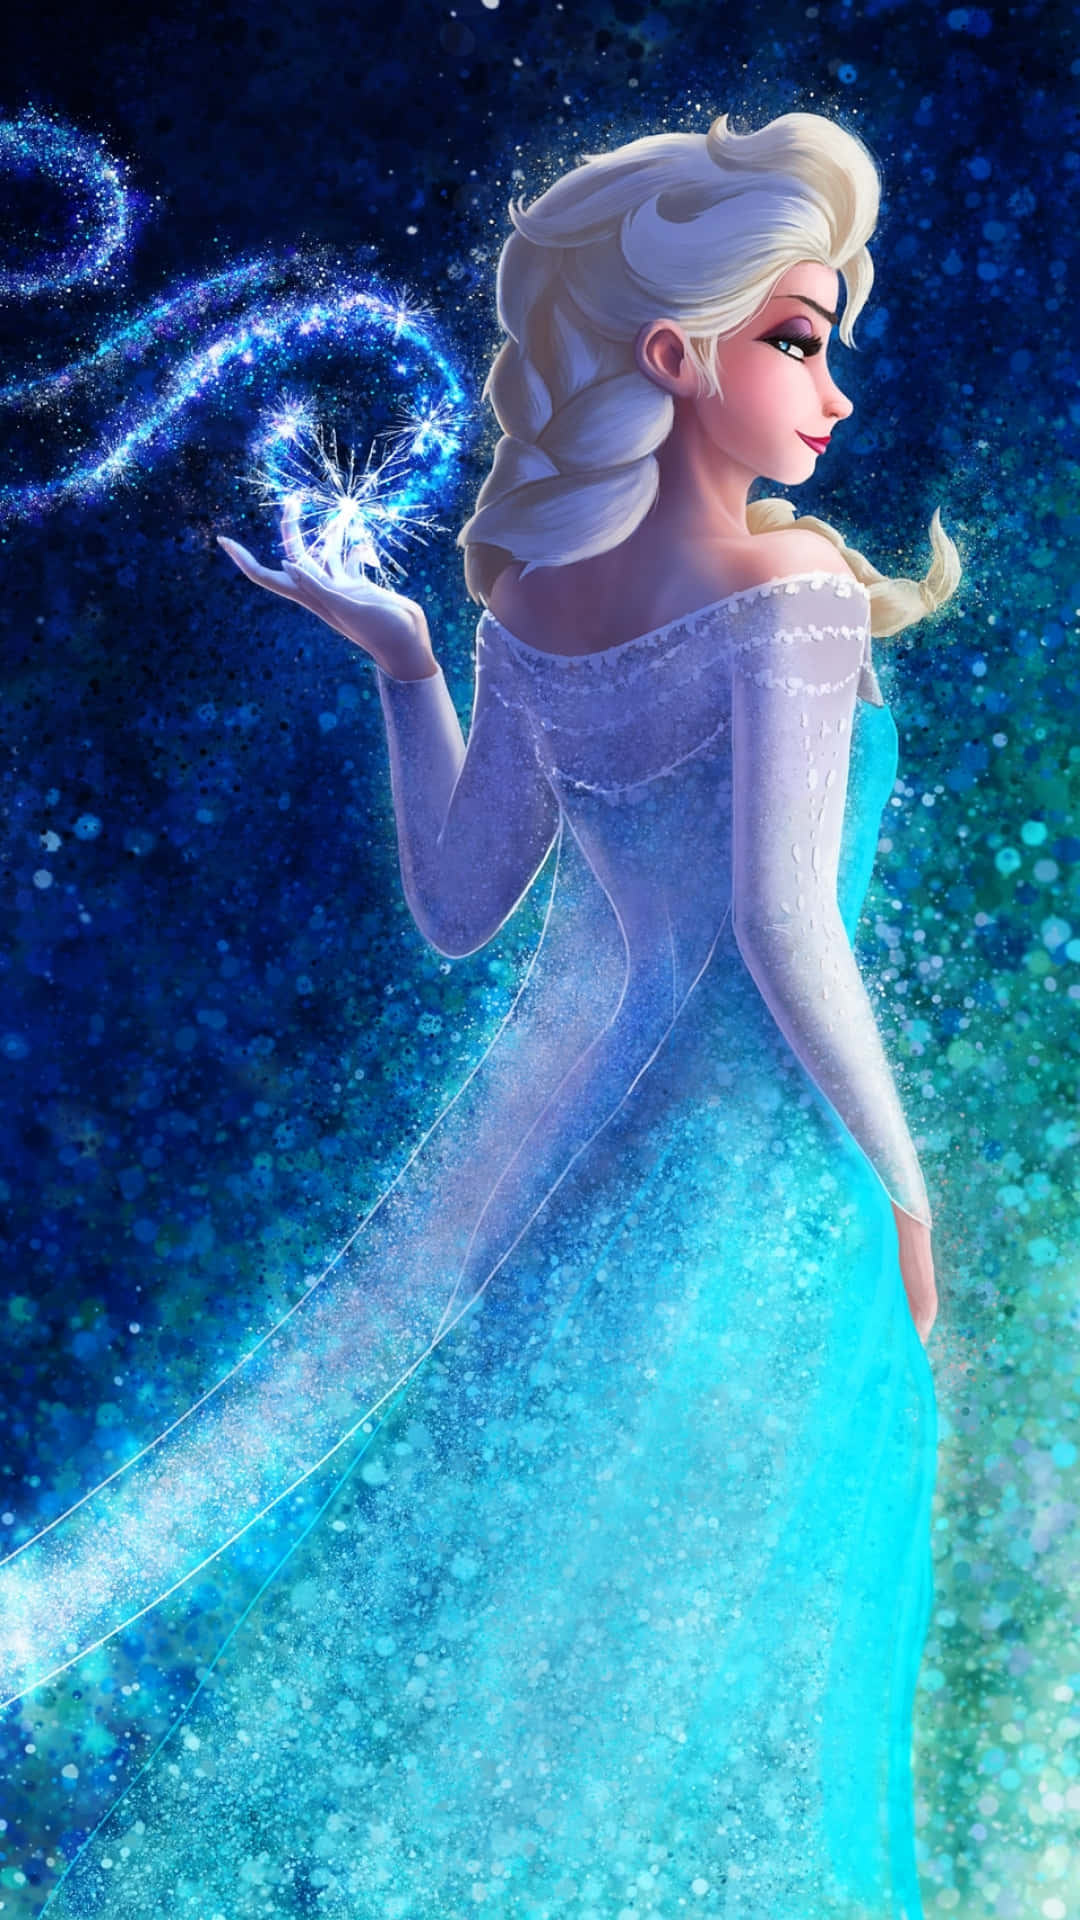 Telefon Elsa Wallpaper